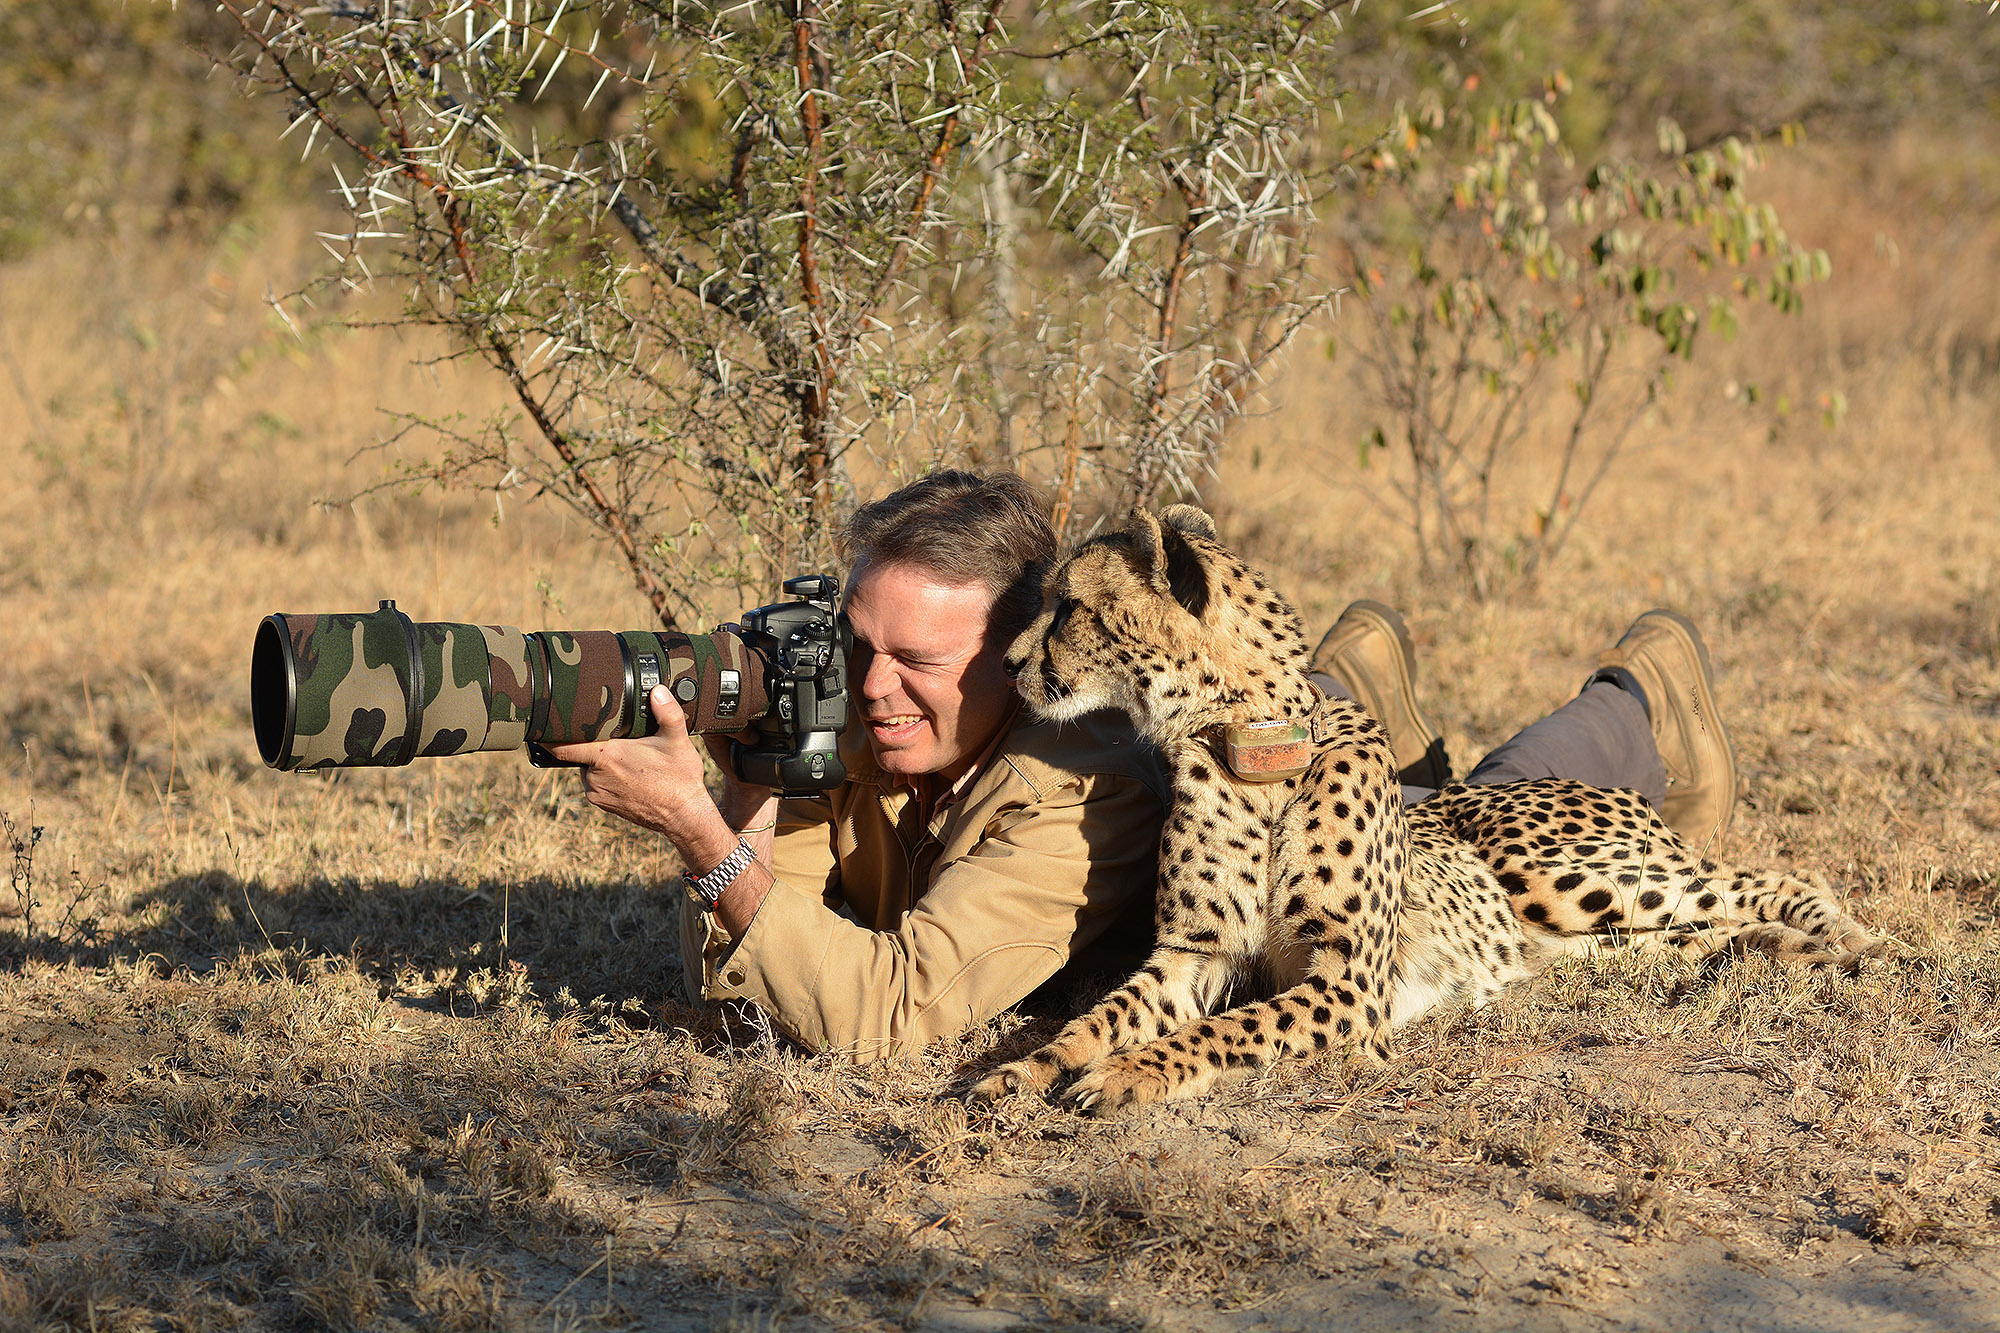 Photo safari with a cheetah...